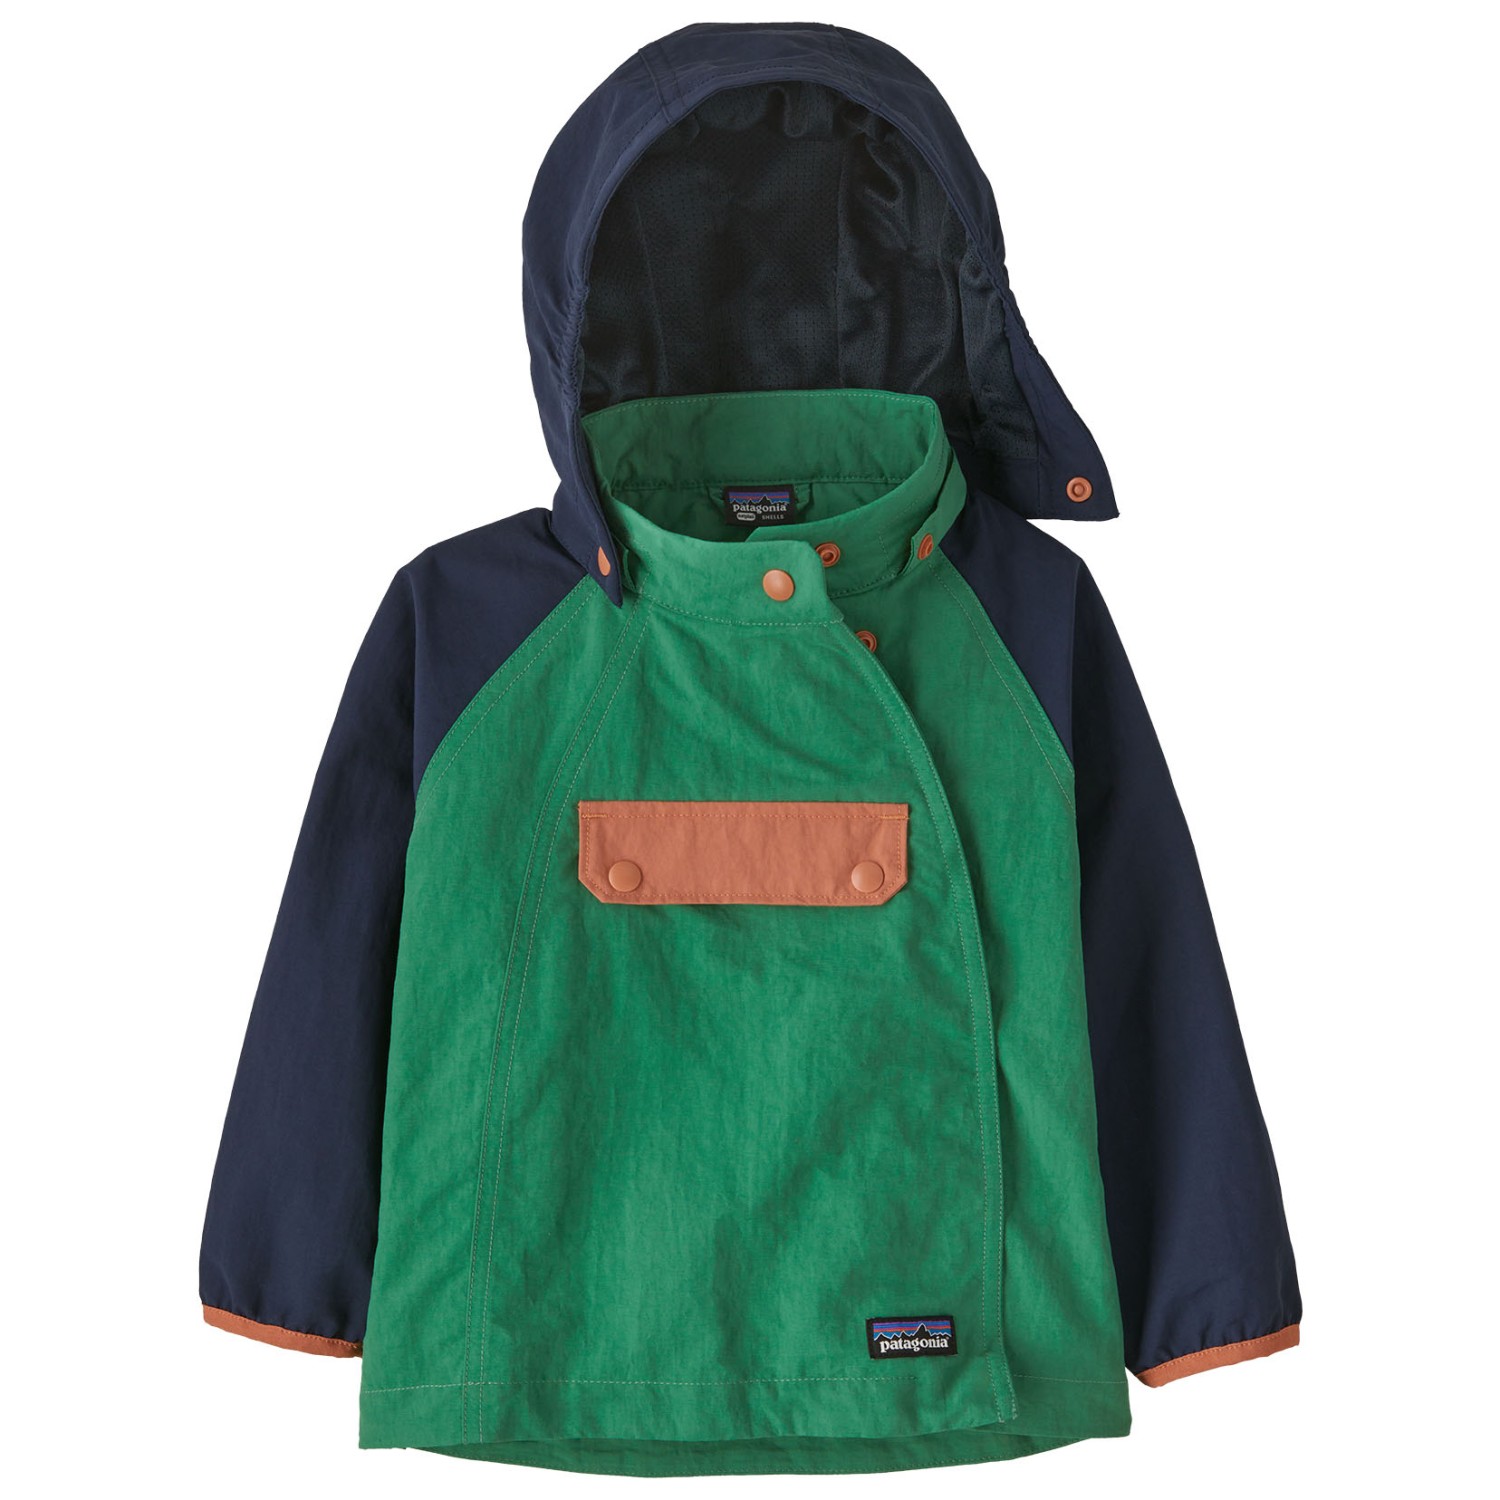 Повседневная куртка Patagonia Kid's Isthmus Anorak, цвет Gather Green повседневная куртка patagonia kid s isthmus anorak цвет subtidal blue